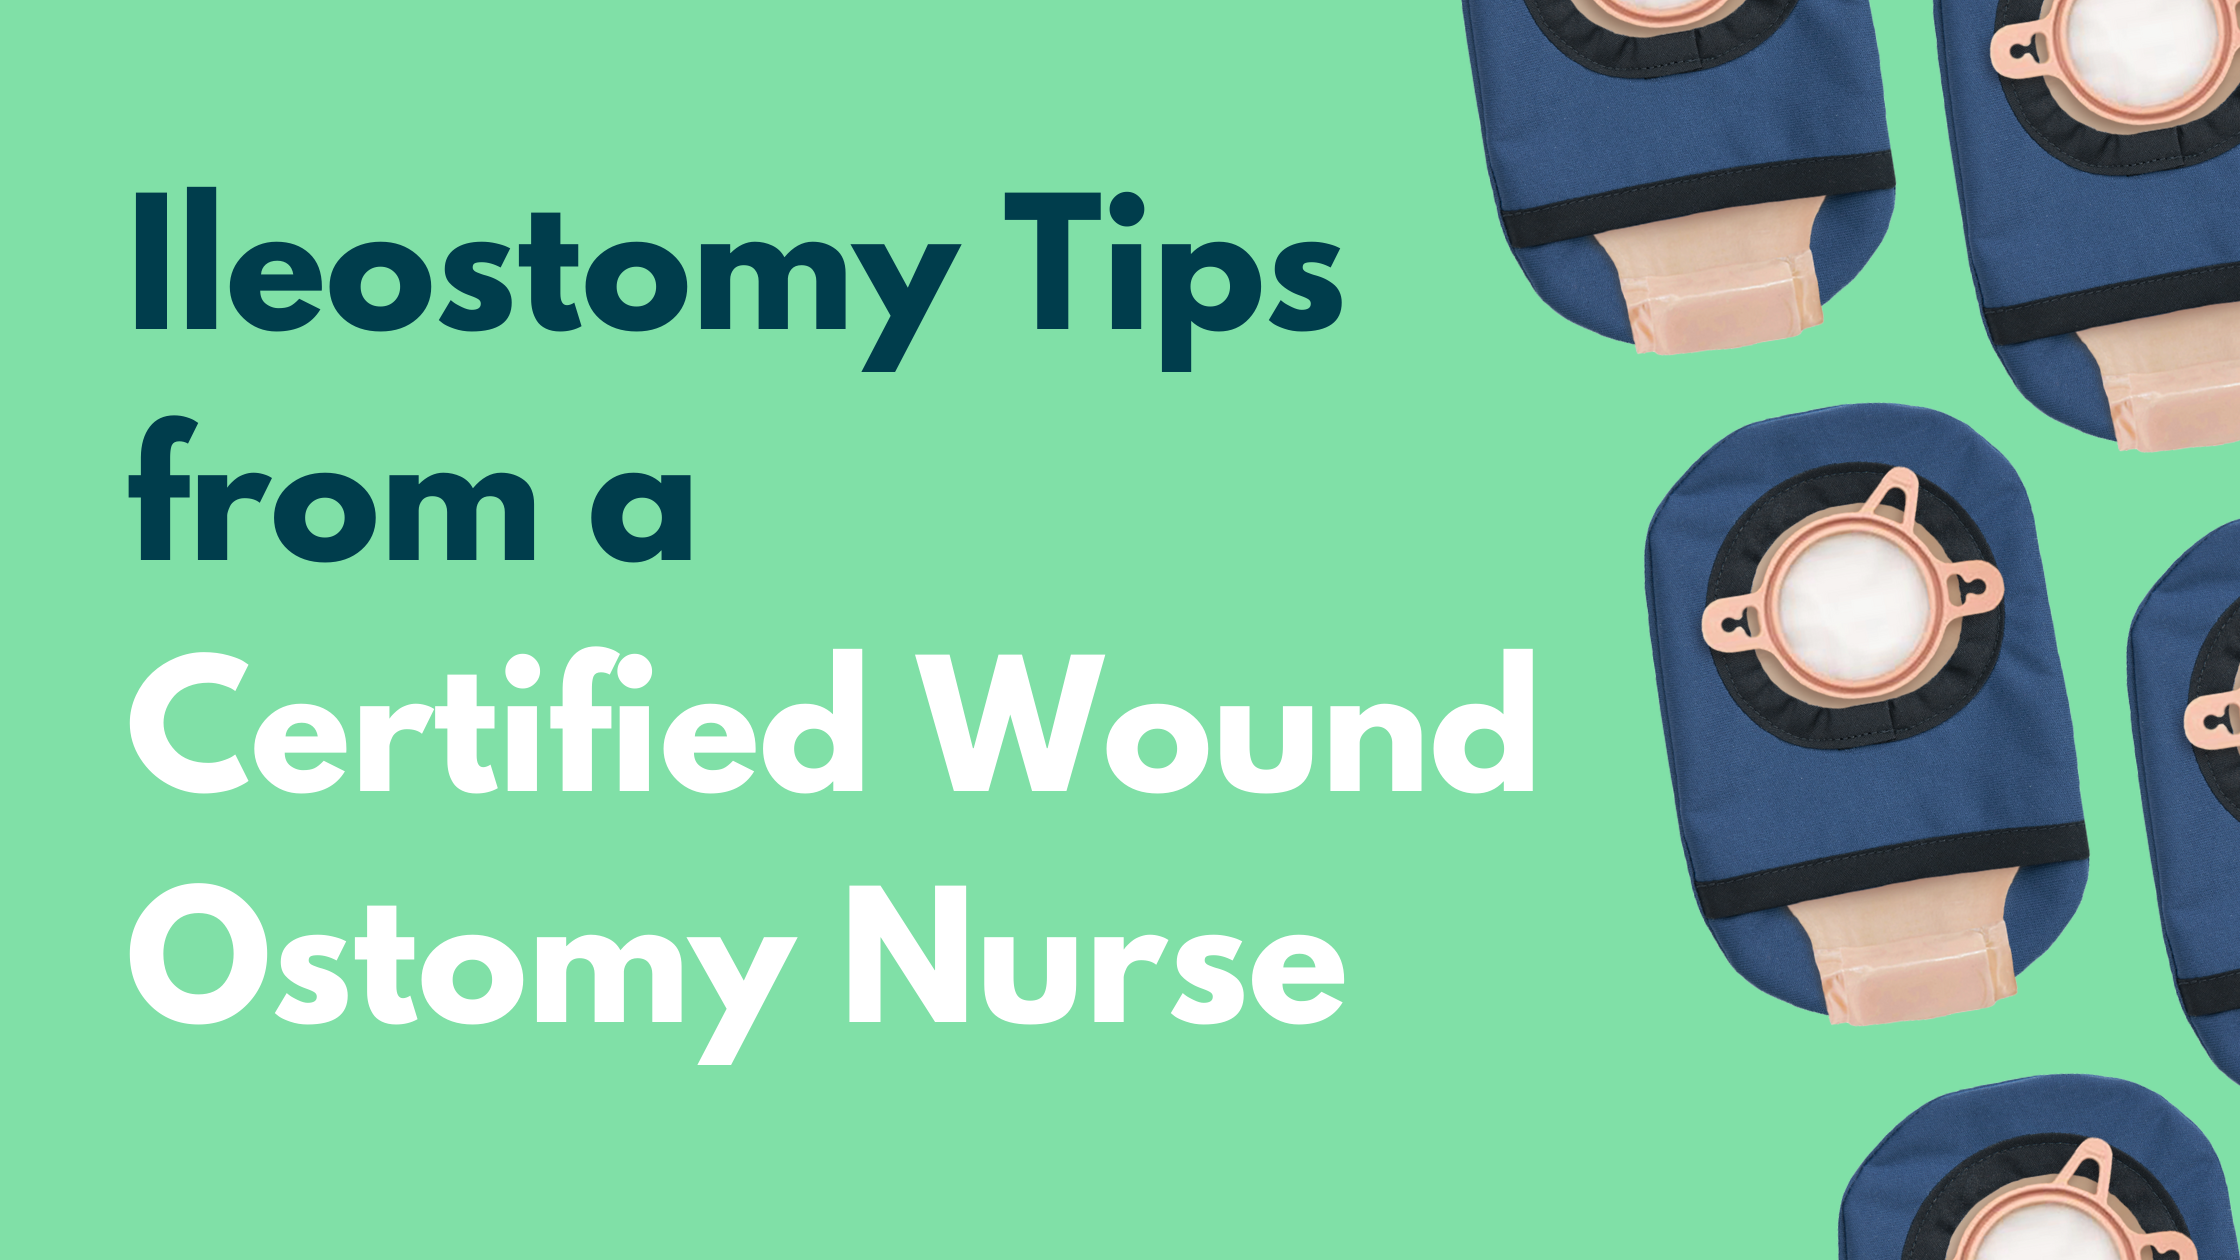 Ileostomy Tips from a Certified Wound Ostomy Nurse